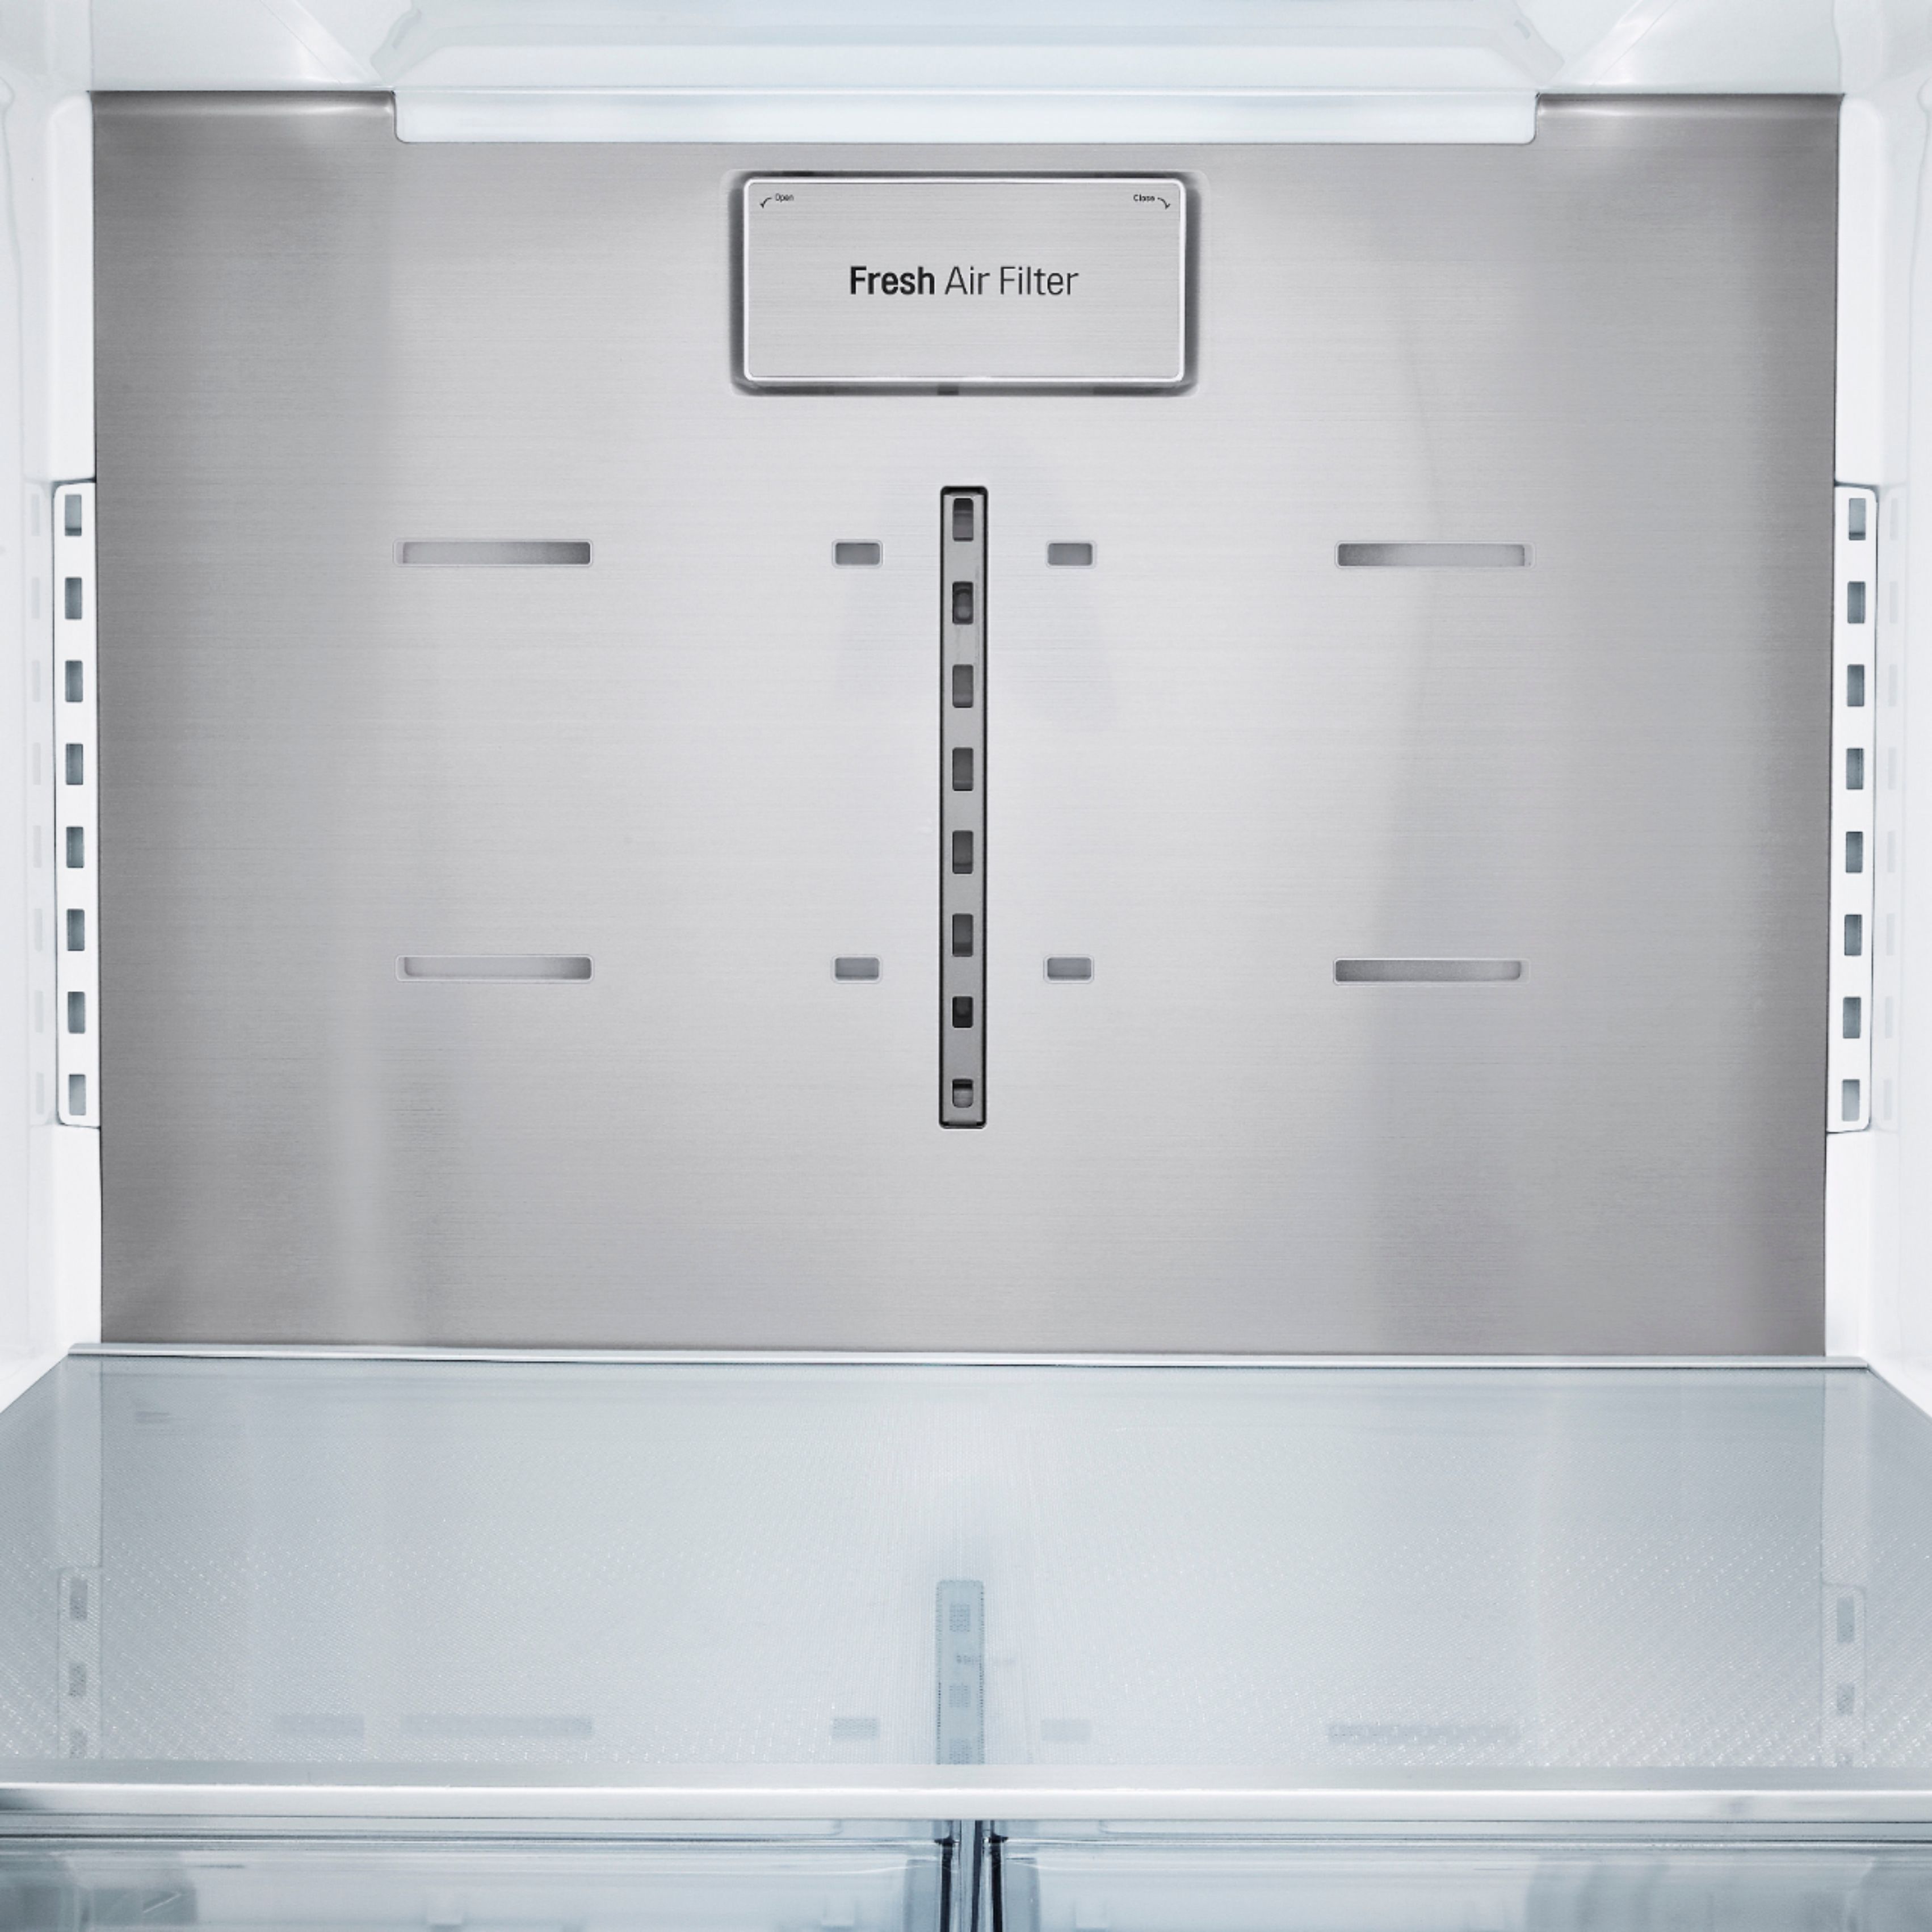 LG 23.5 Cu. Ft. French Door-in-Door Counter-Depth Smart Refrigerator with Craft  Ice Stainless Steel LRFVC2406S - Best Buy